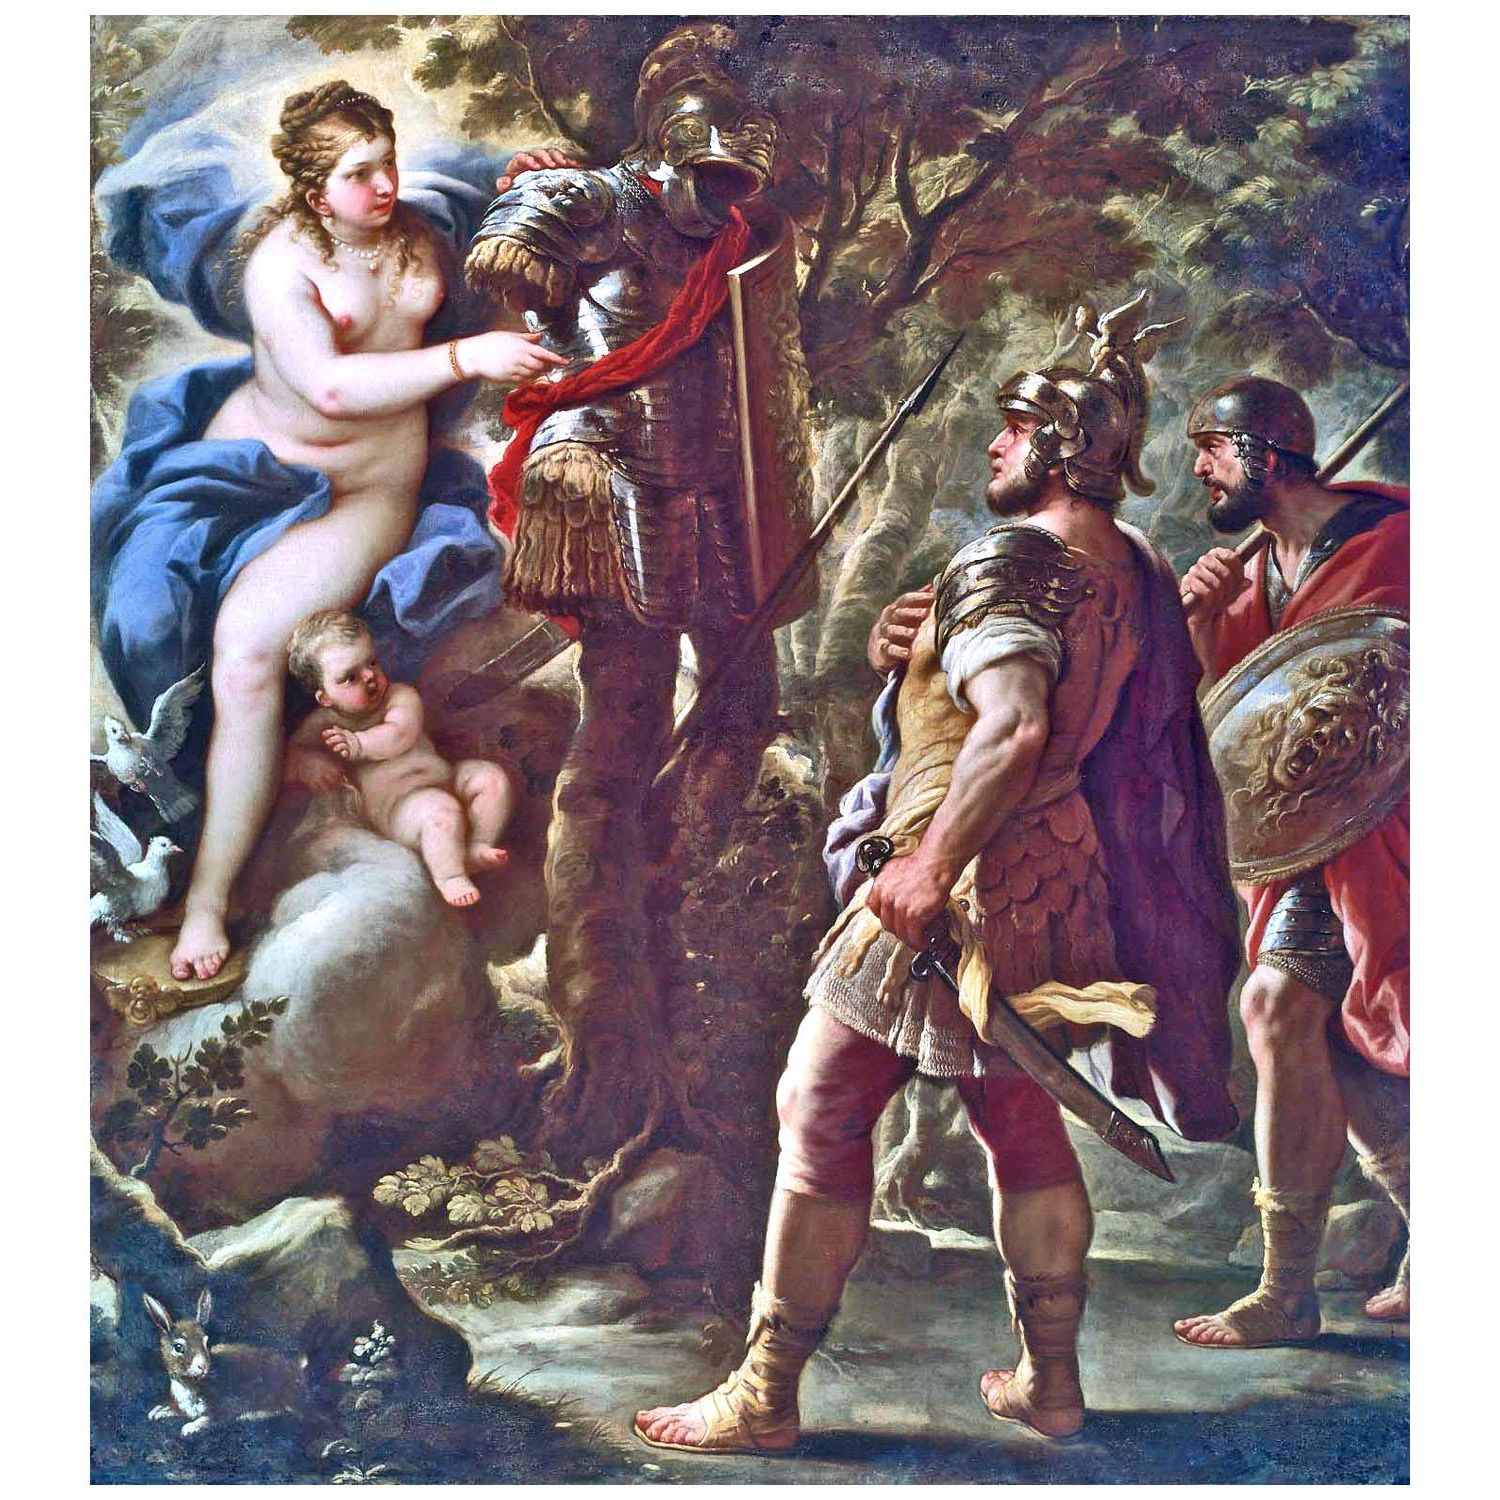 Luca Giordano. Venere dà le armi a Enea. 1700. Museum of Fine Arts Boston